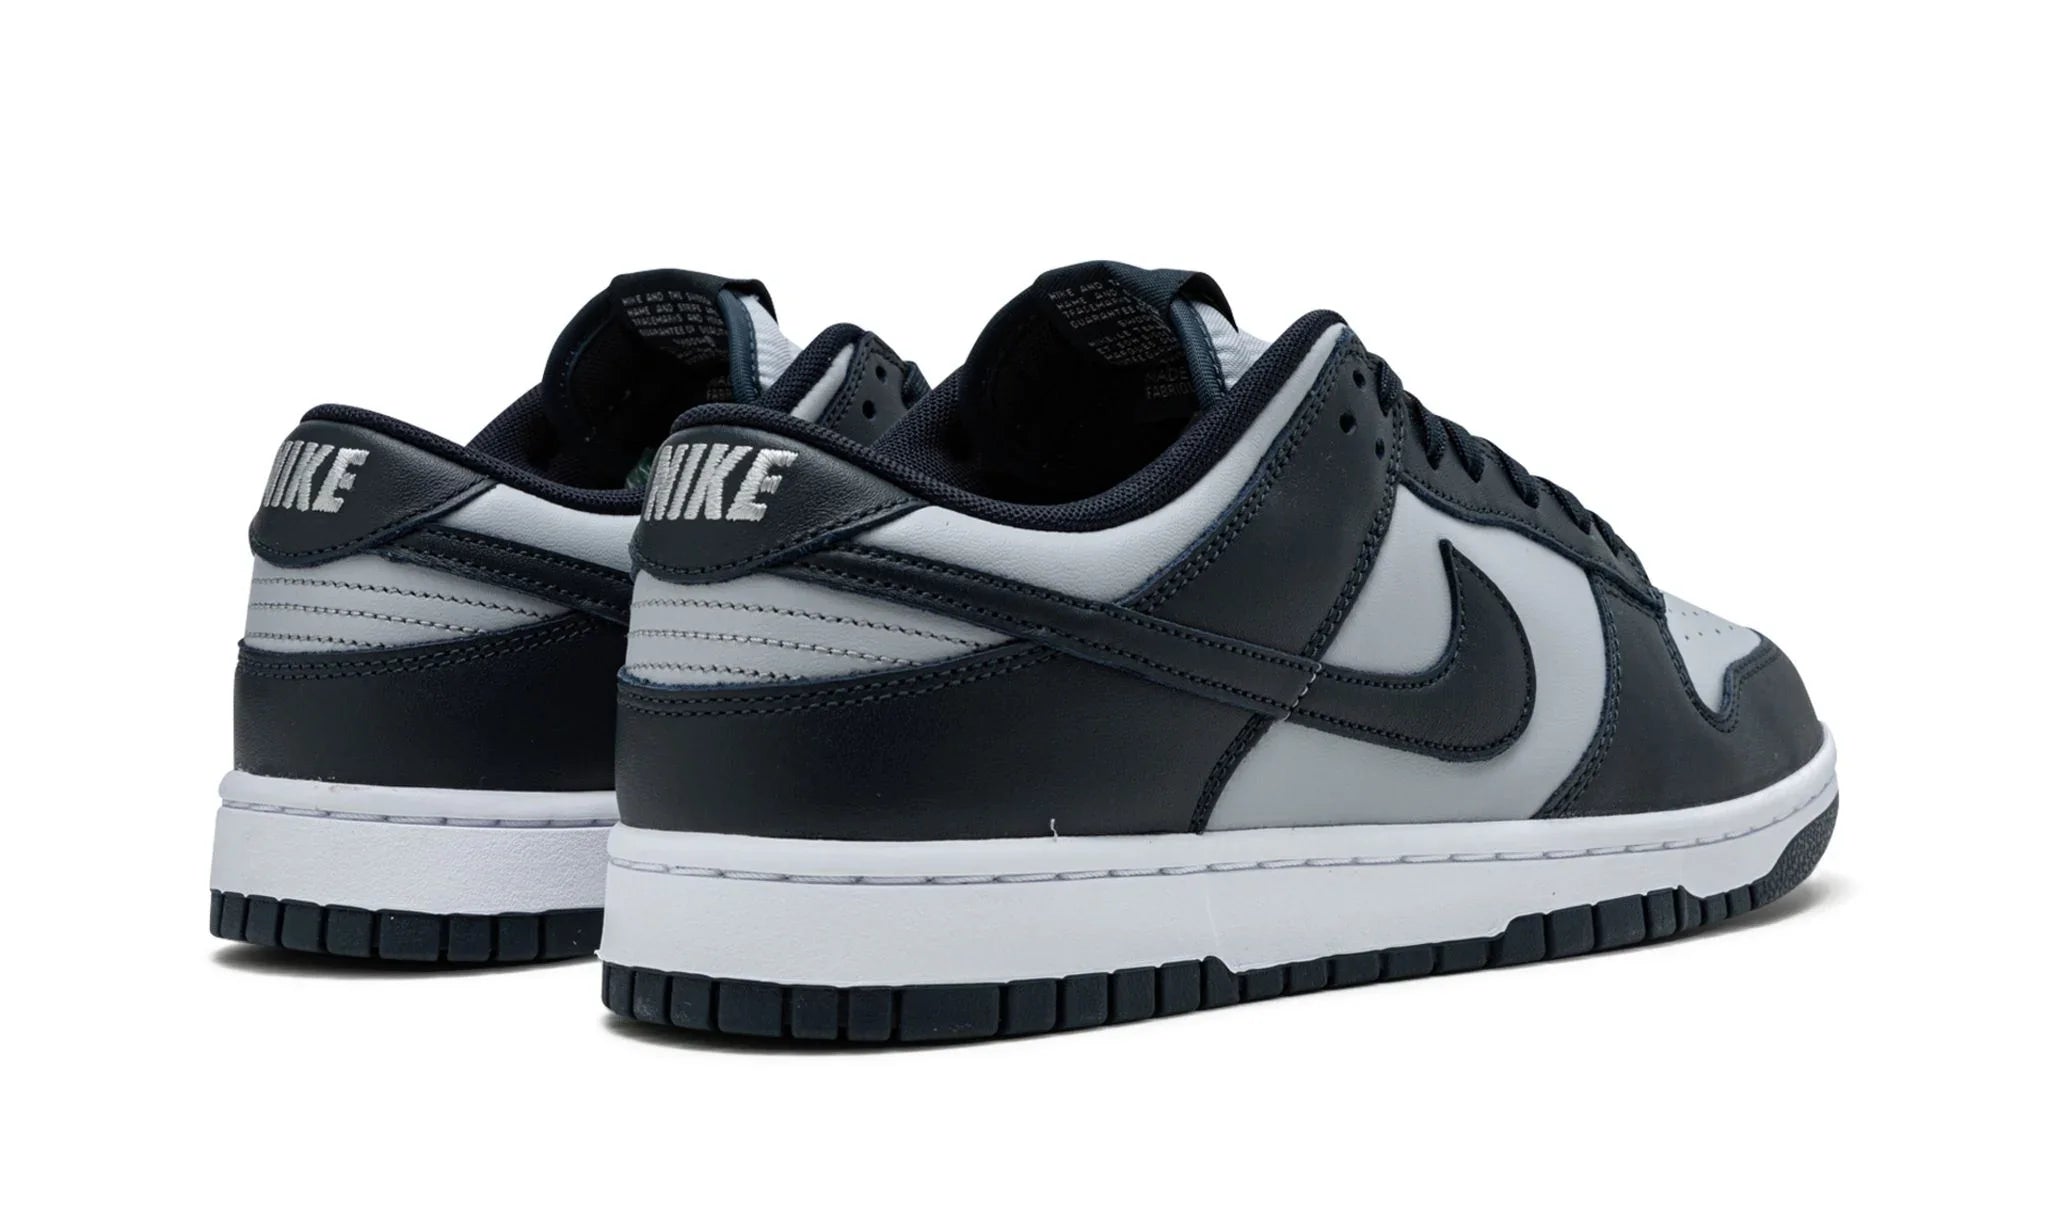 Nike Dunk Low "Georgetown" - CW1590-004 - Sneakers